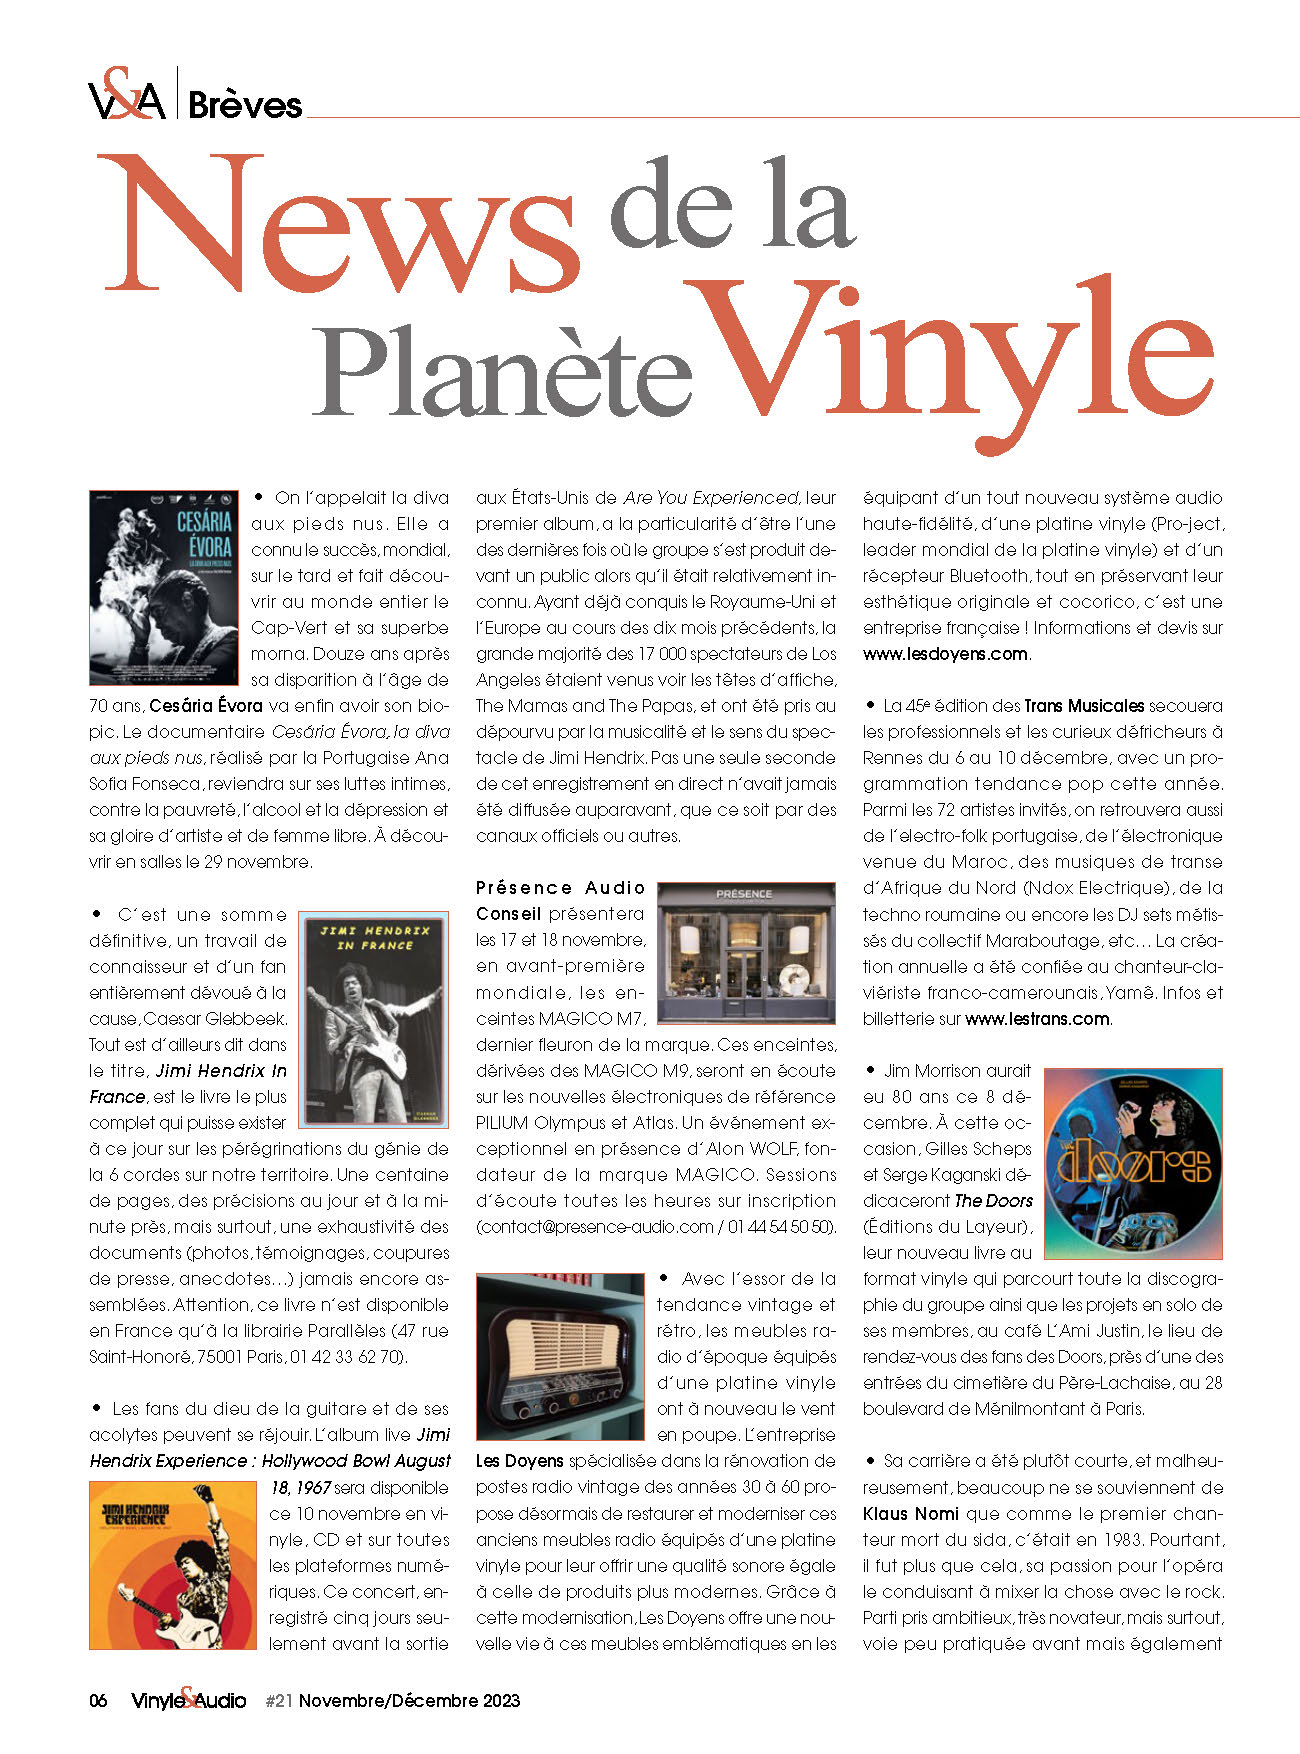 Vinyle & Audio n°21 : News de la Planète Vinyle